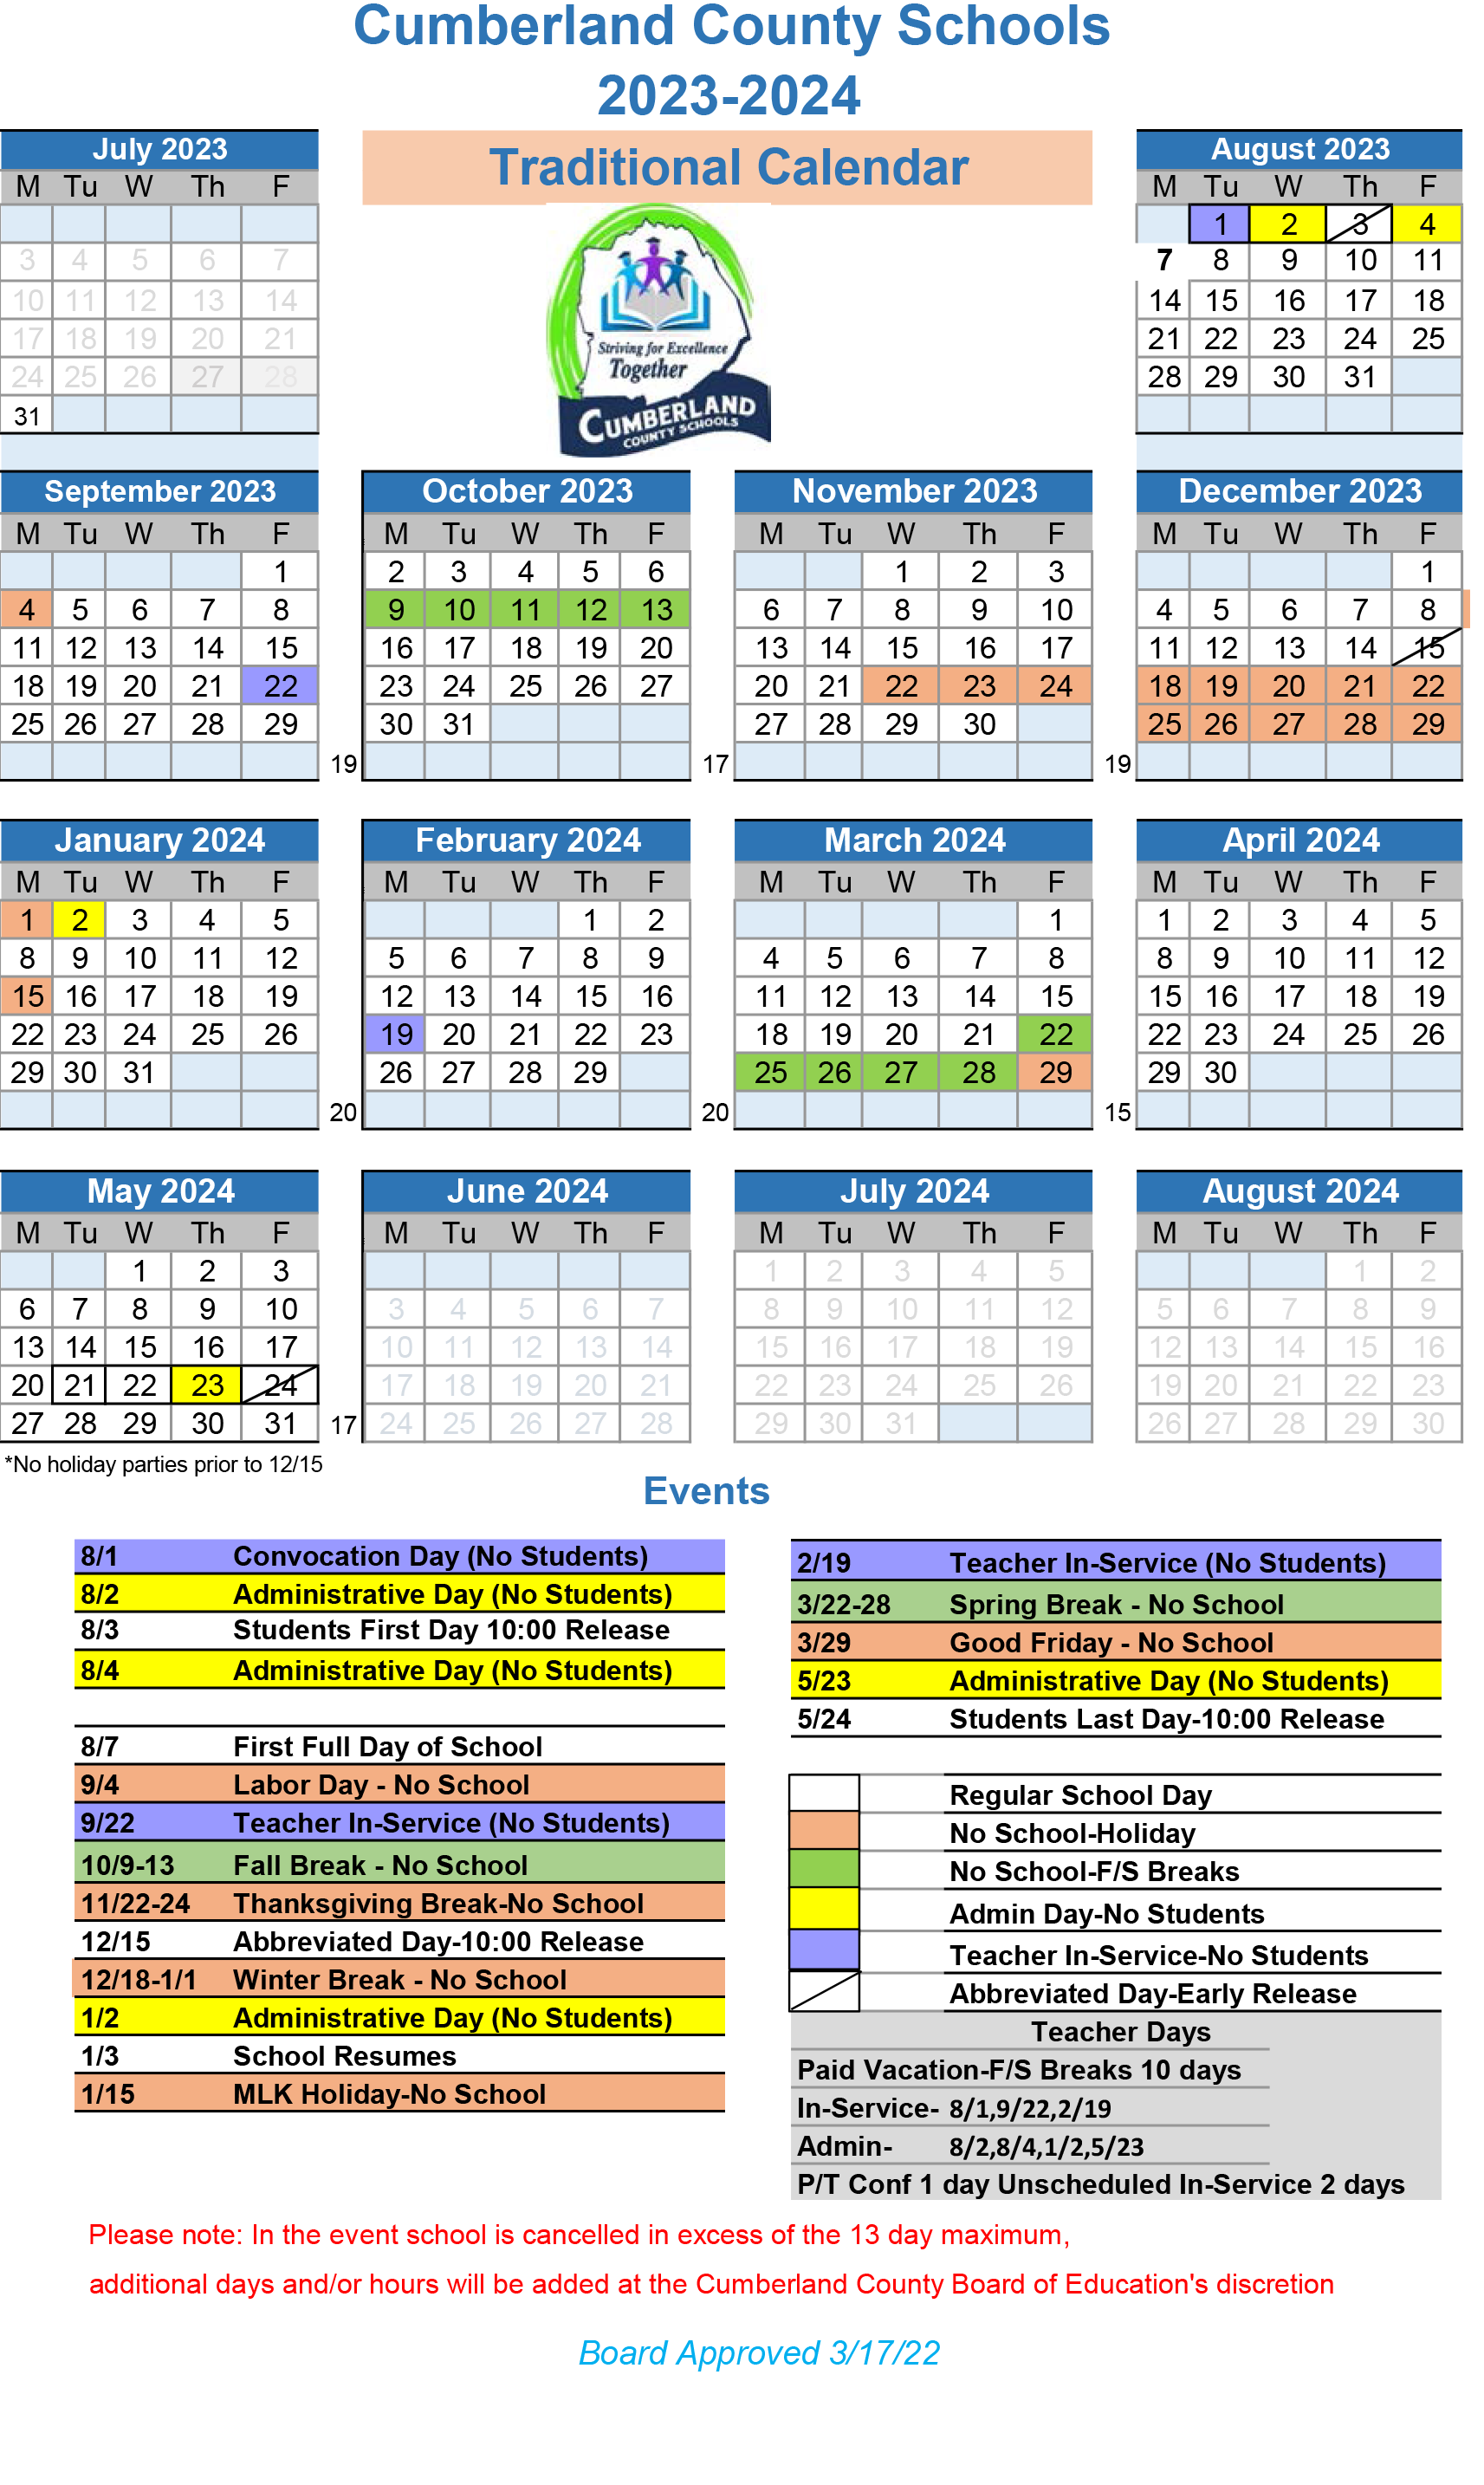 pgcps-2021-22-calendar-customize-and-print